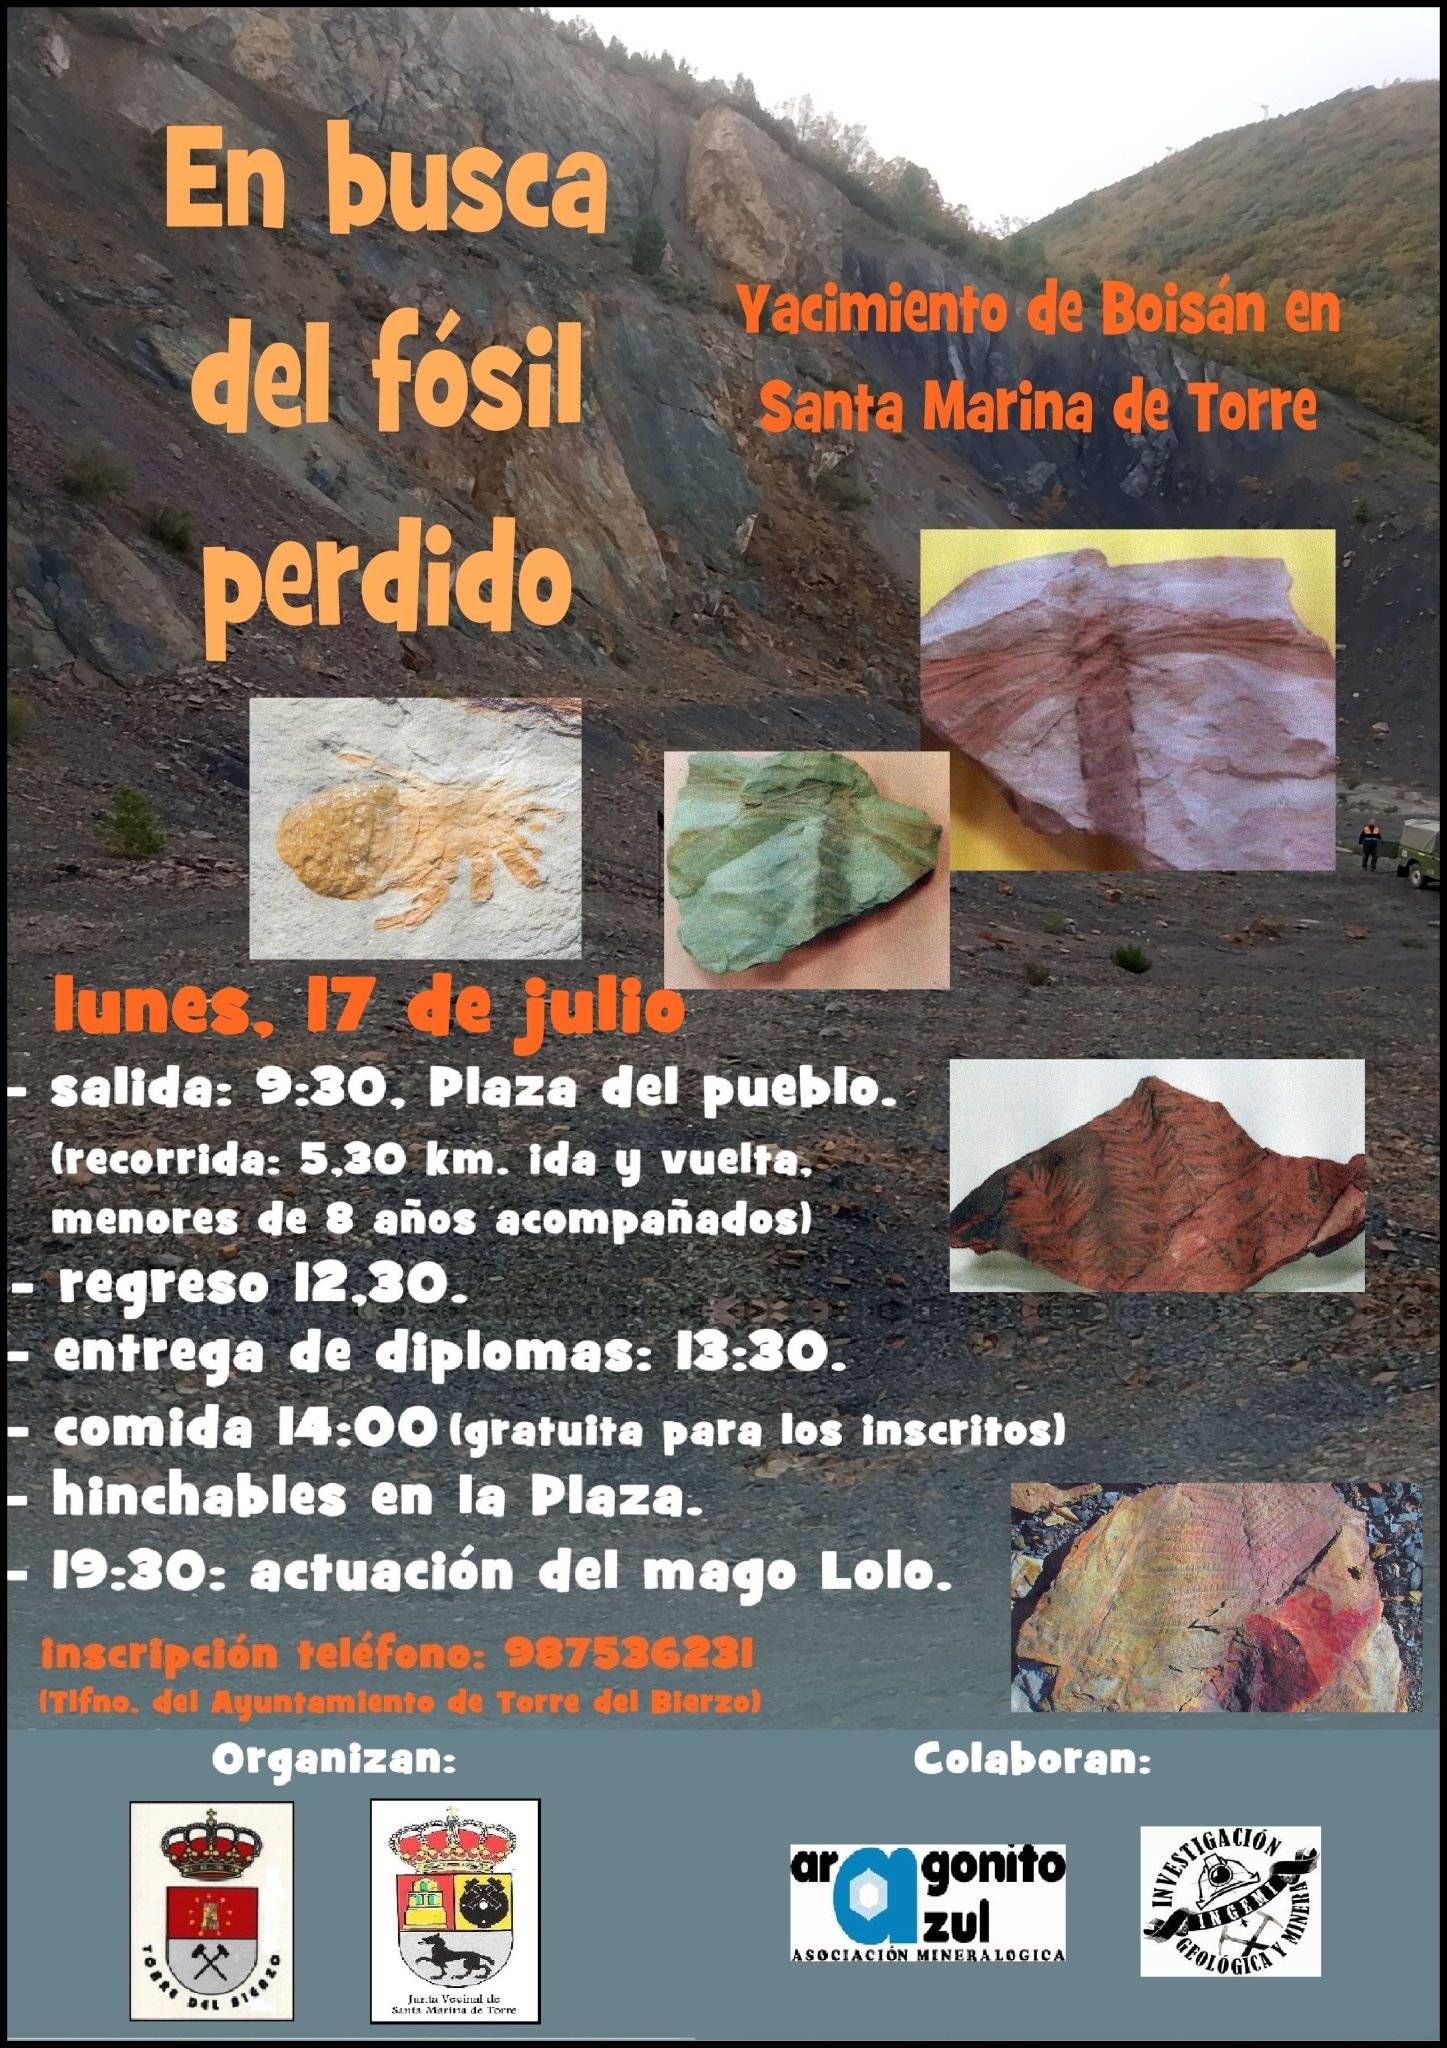 El ayuntamiento de Torre del Bierzo, recupera la actividad "En busca del fósil perdido" 2